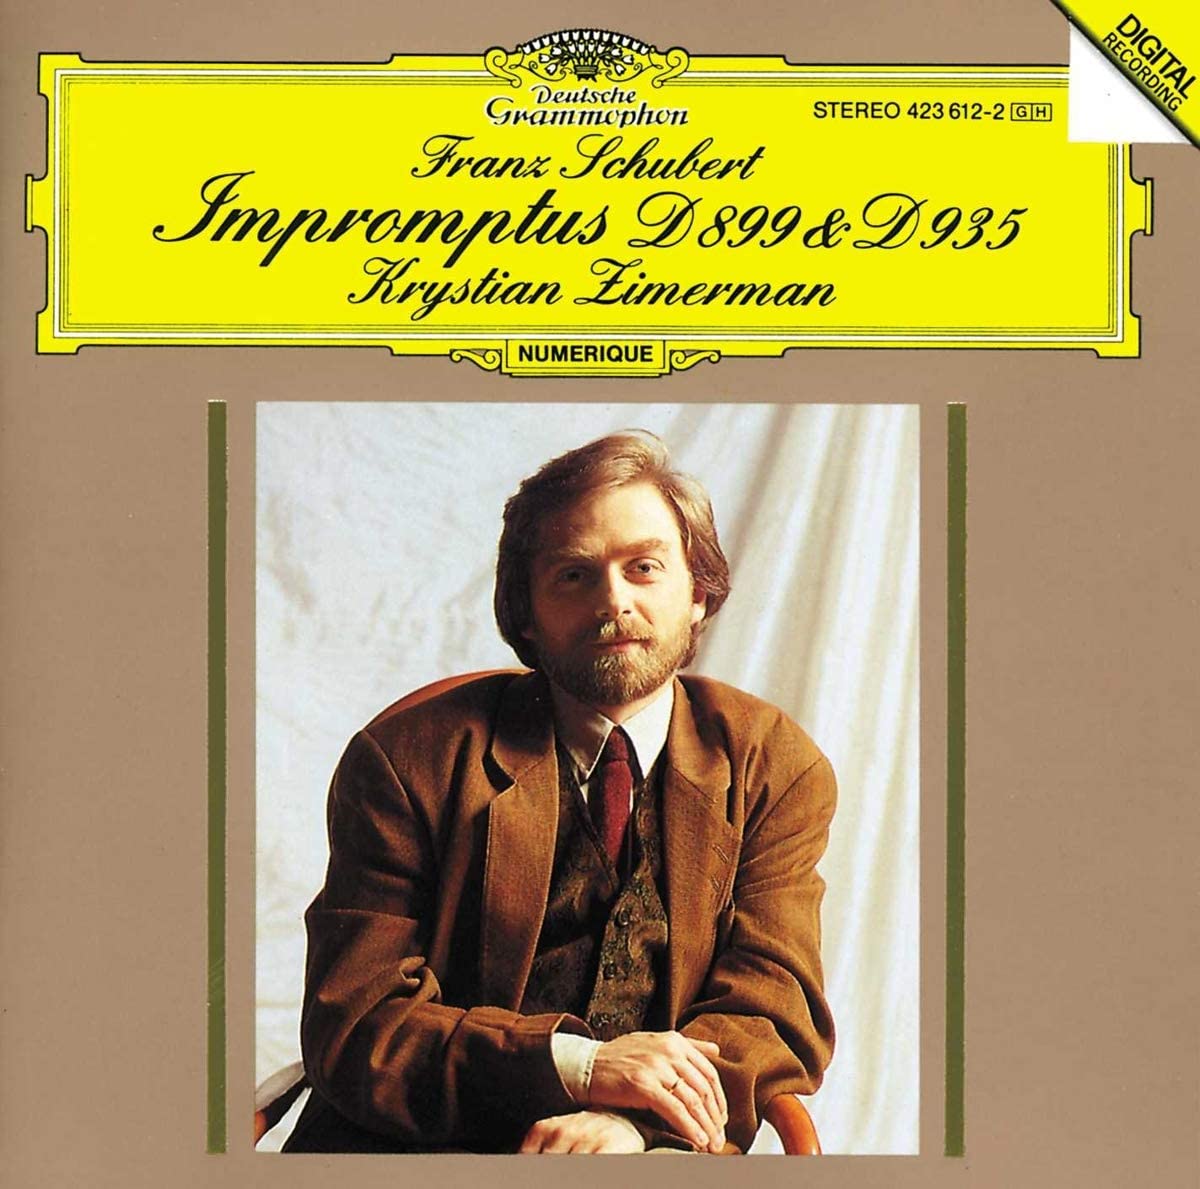 Schubert: Impromptus, D 899 & D 935 | Krystian Zimerman, Franz Schubert